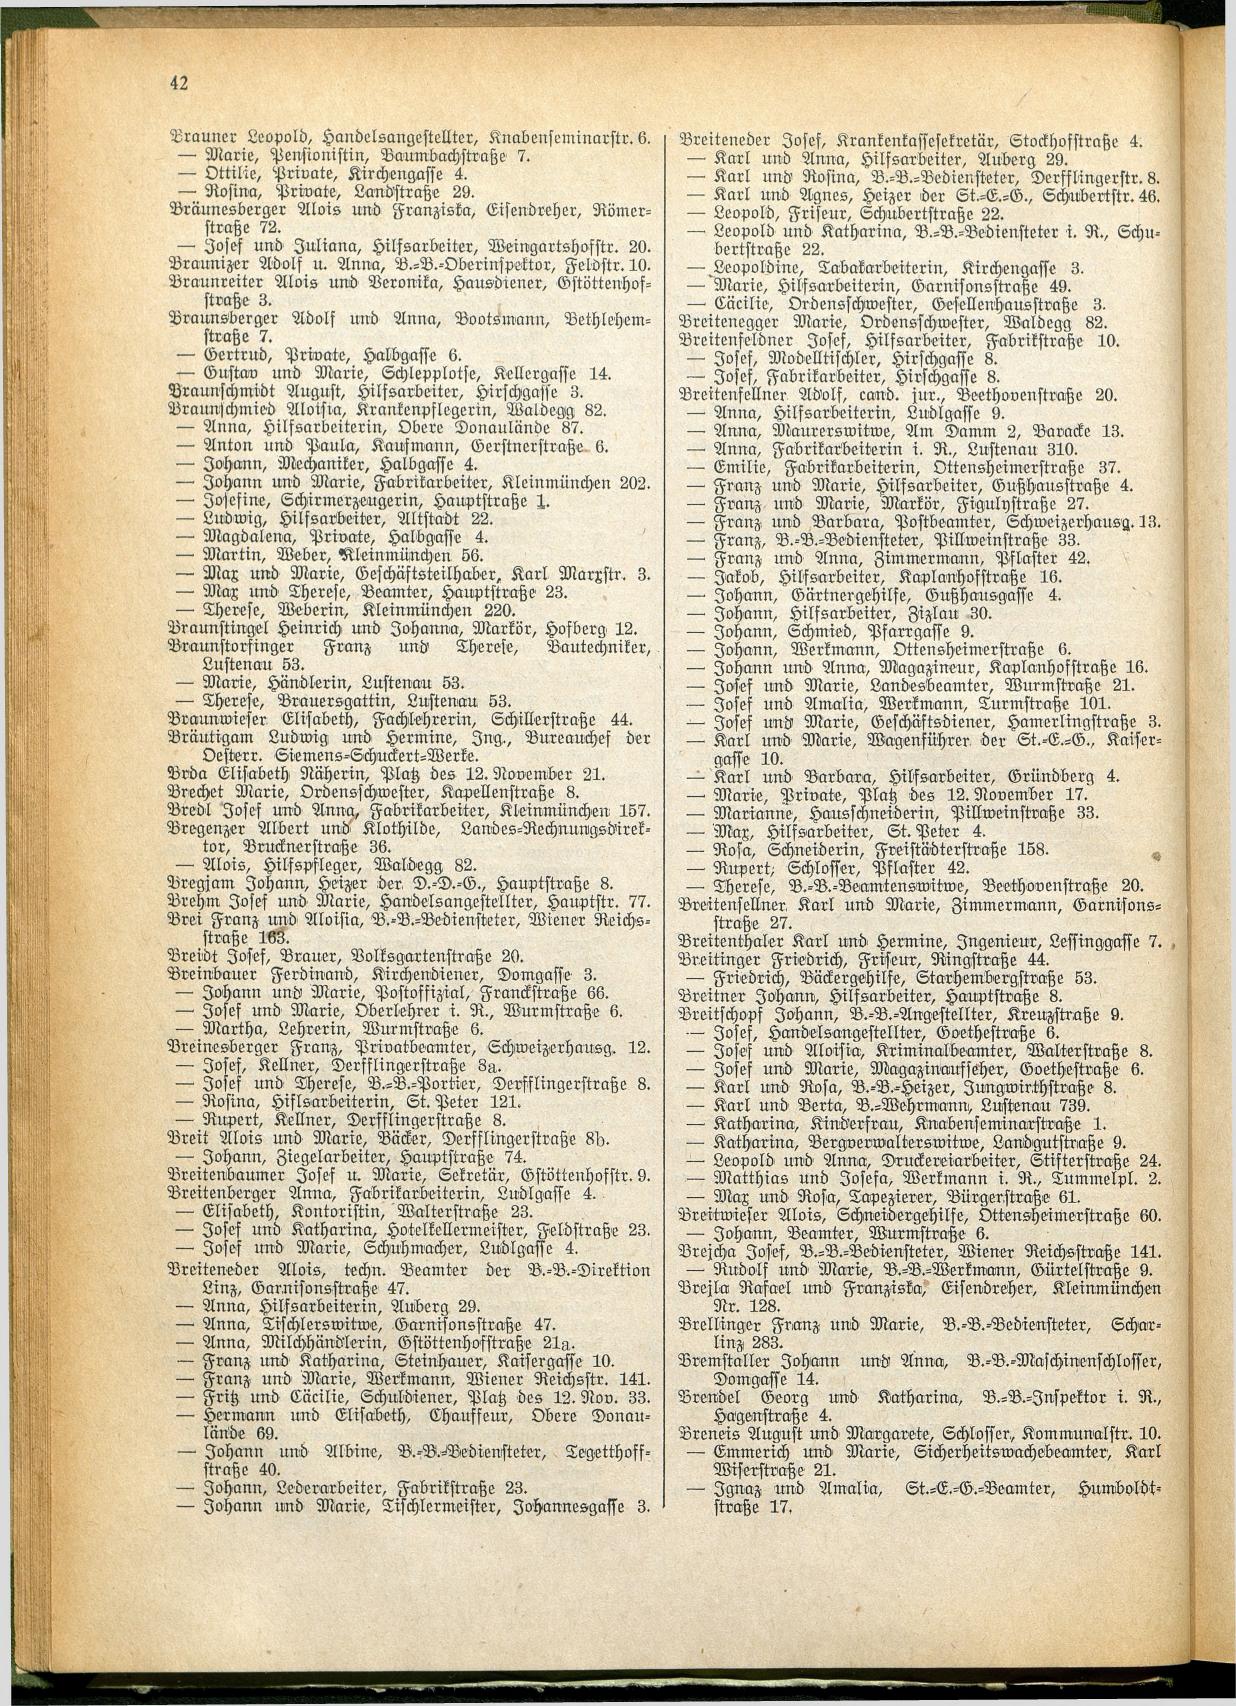 Amtliches Linzer Adreßbuch 1928 - Seite 44